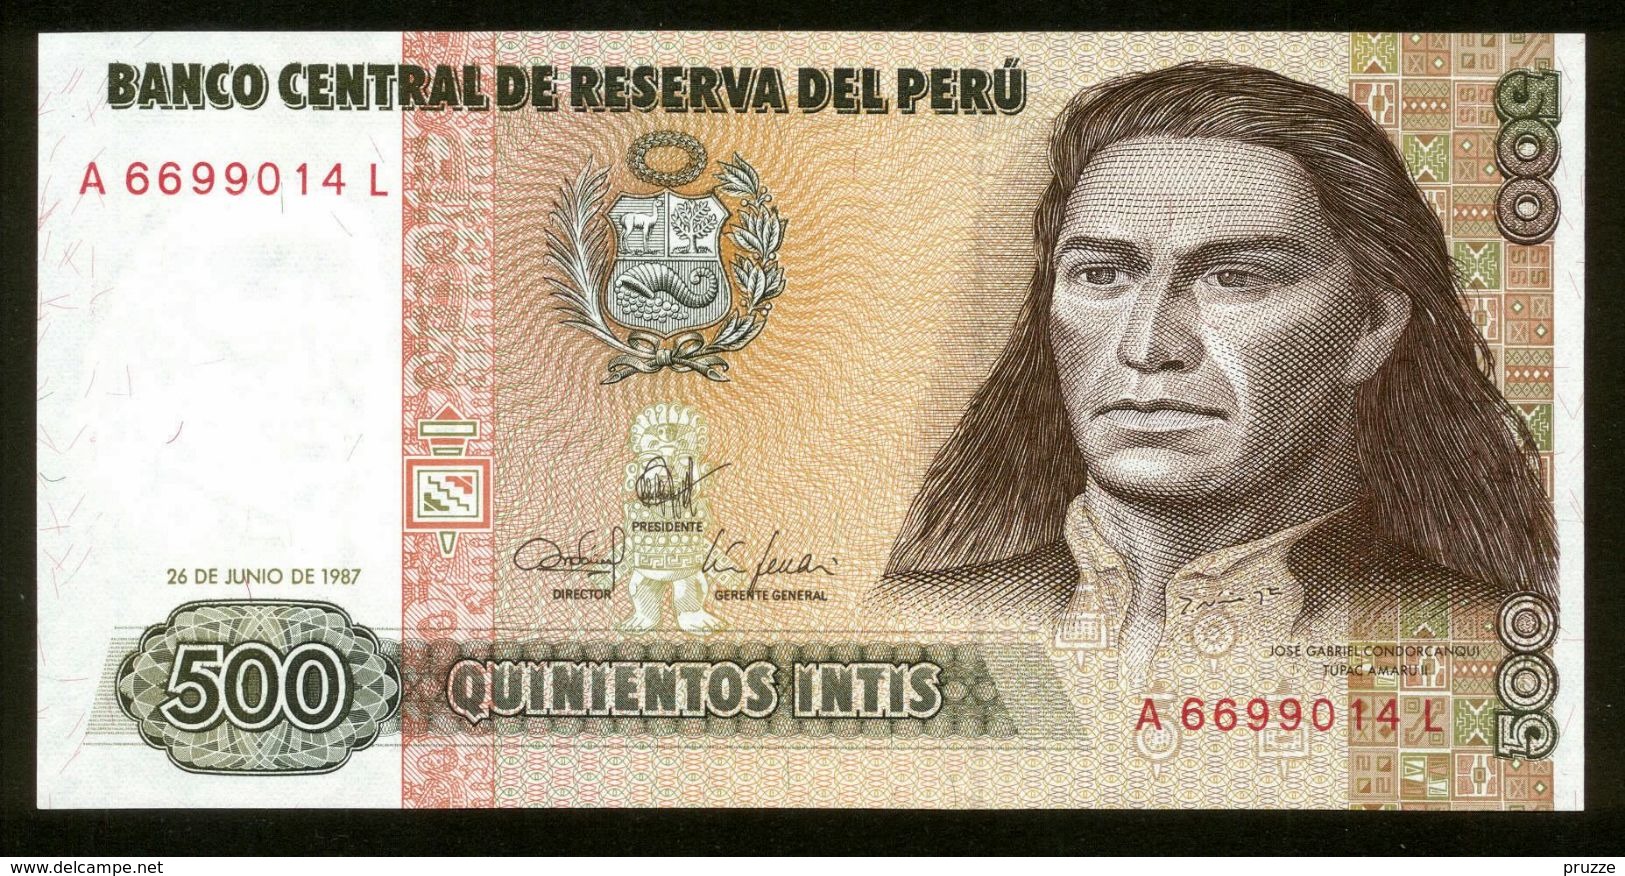 Peru 1987, 500 Intis - UNC - A6699014L - Peru